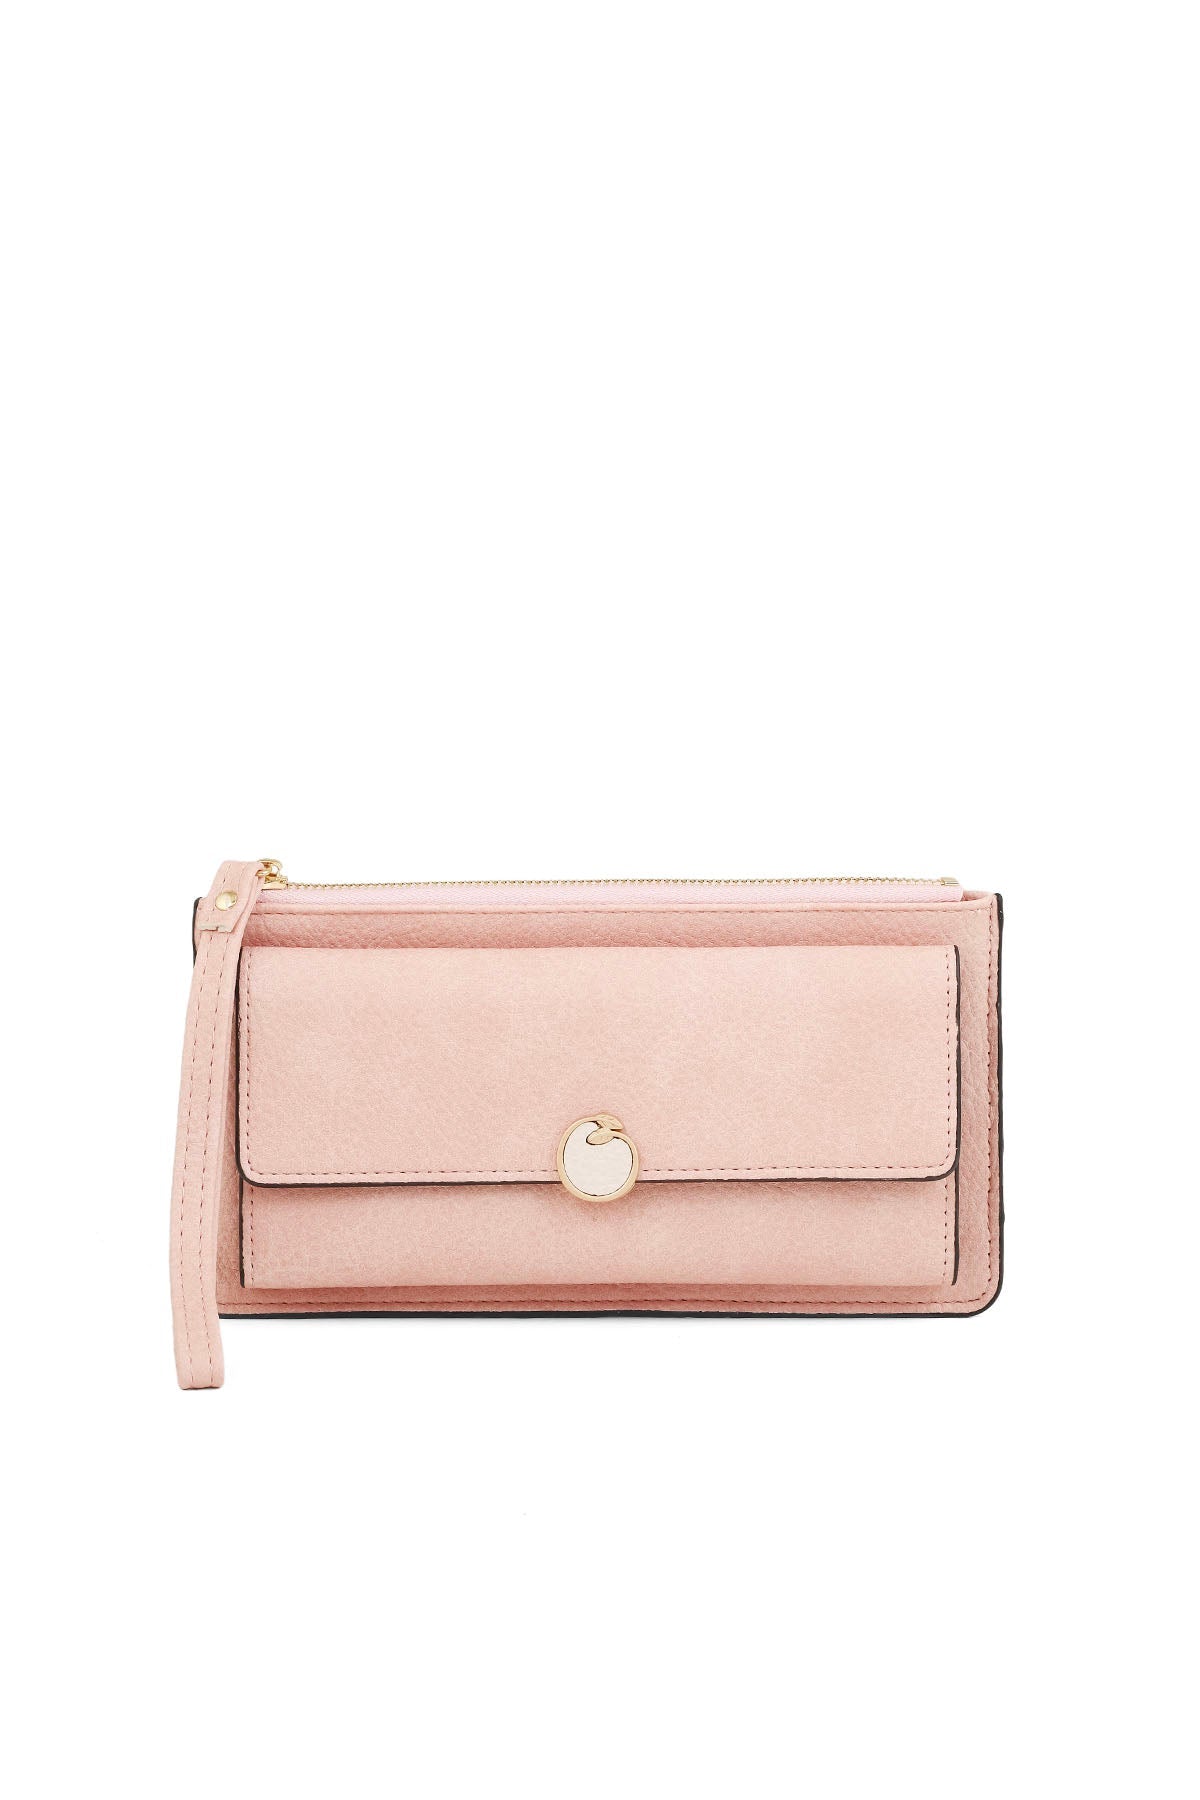 Wristlet Wallet B26051-Pink